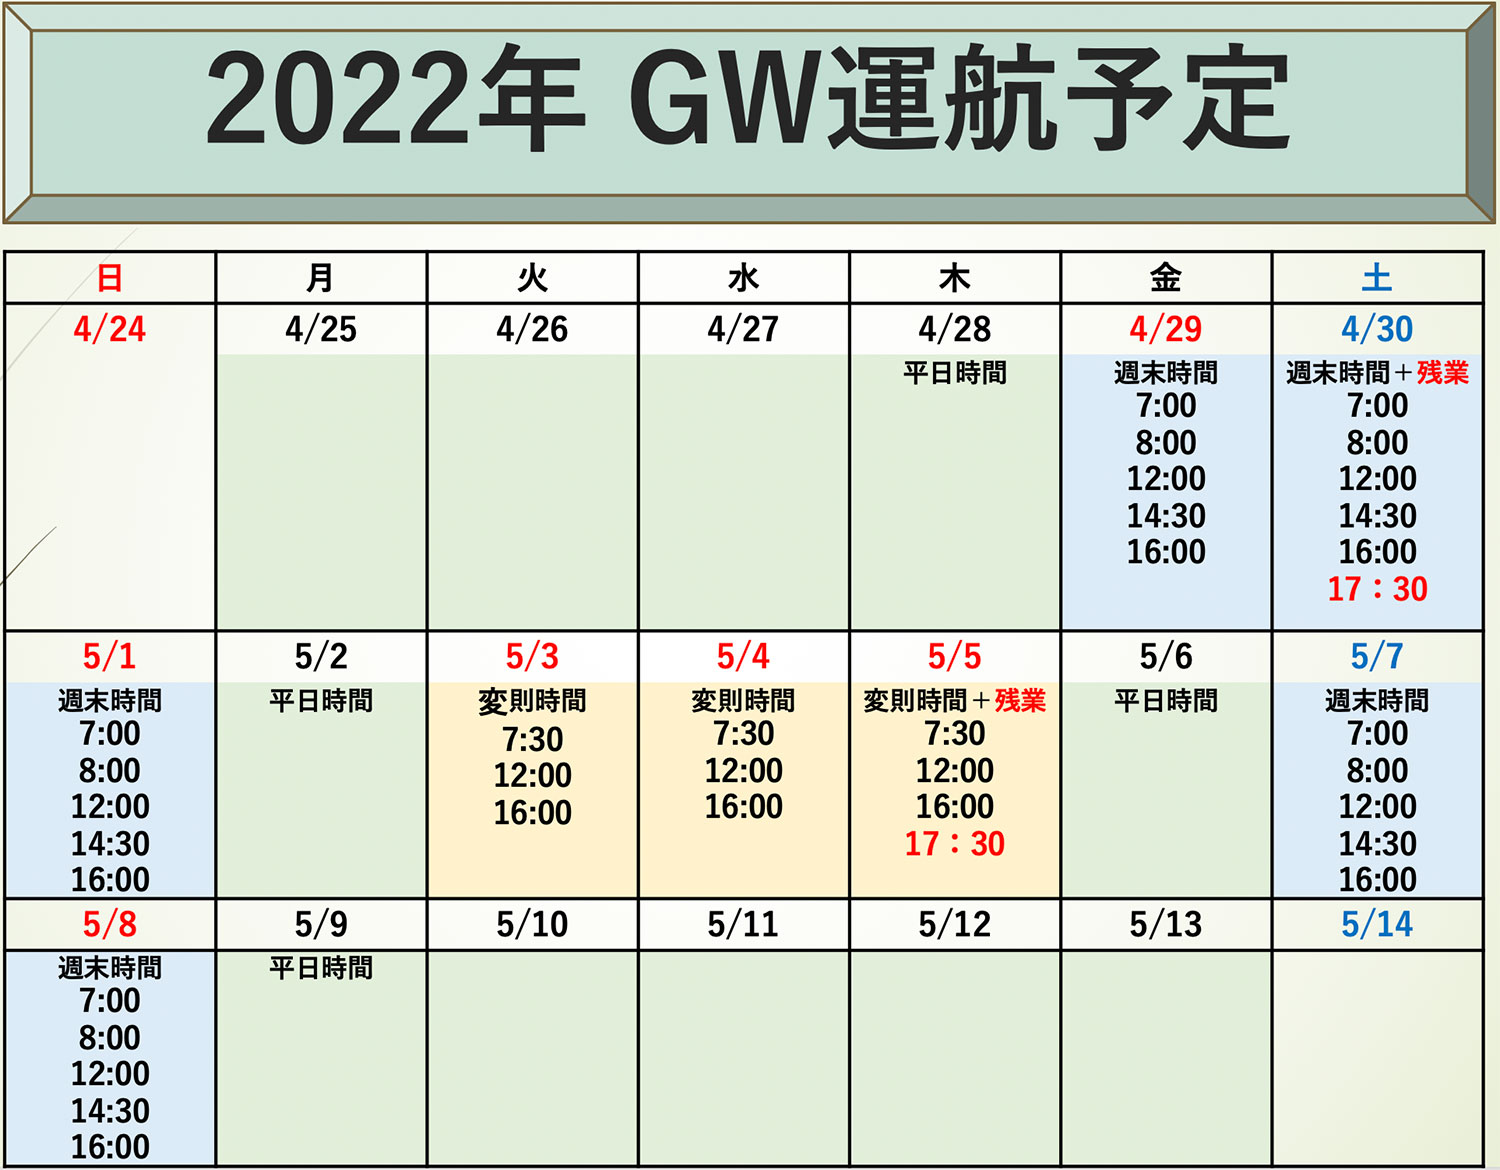 2022年 GW運航予定